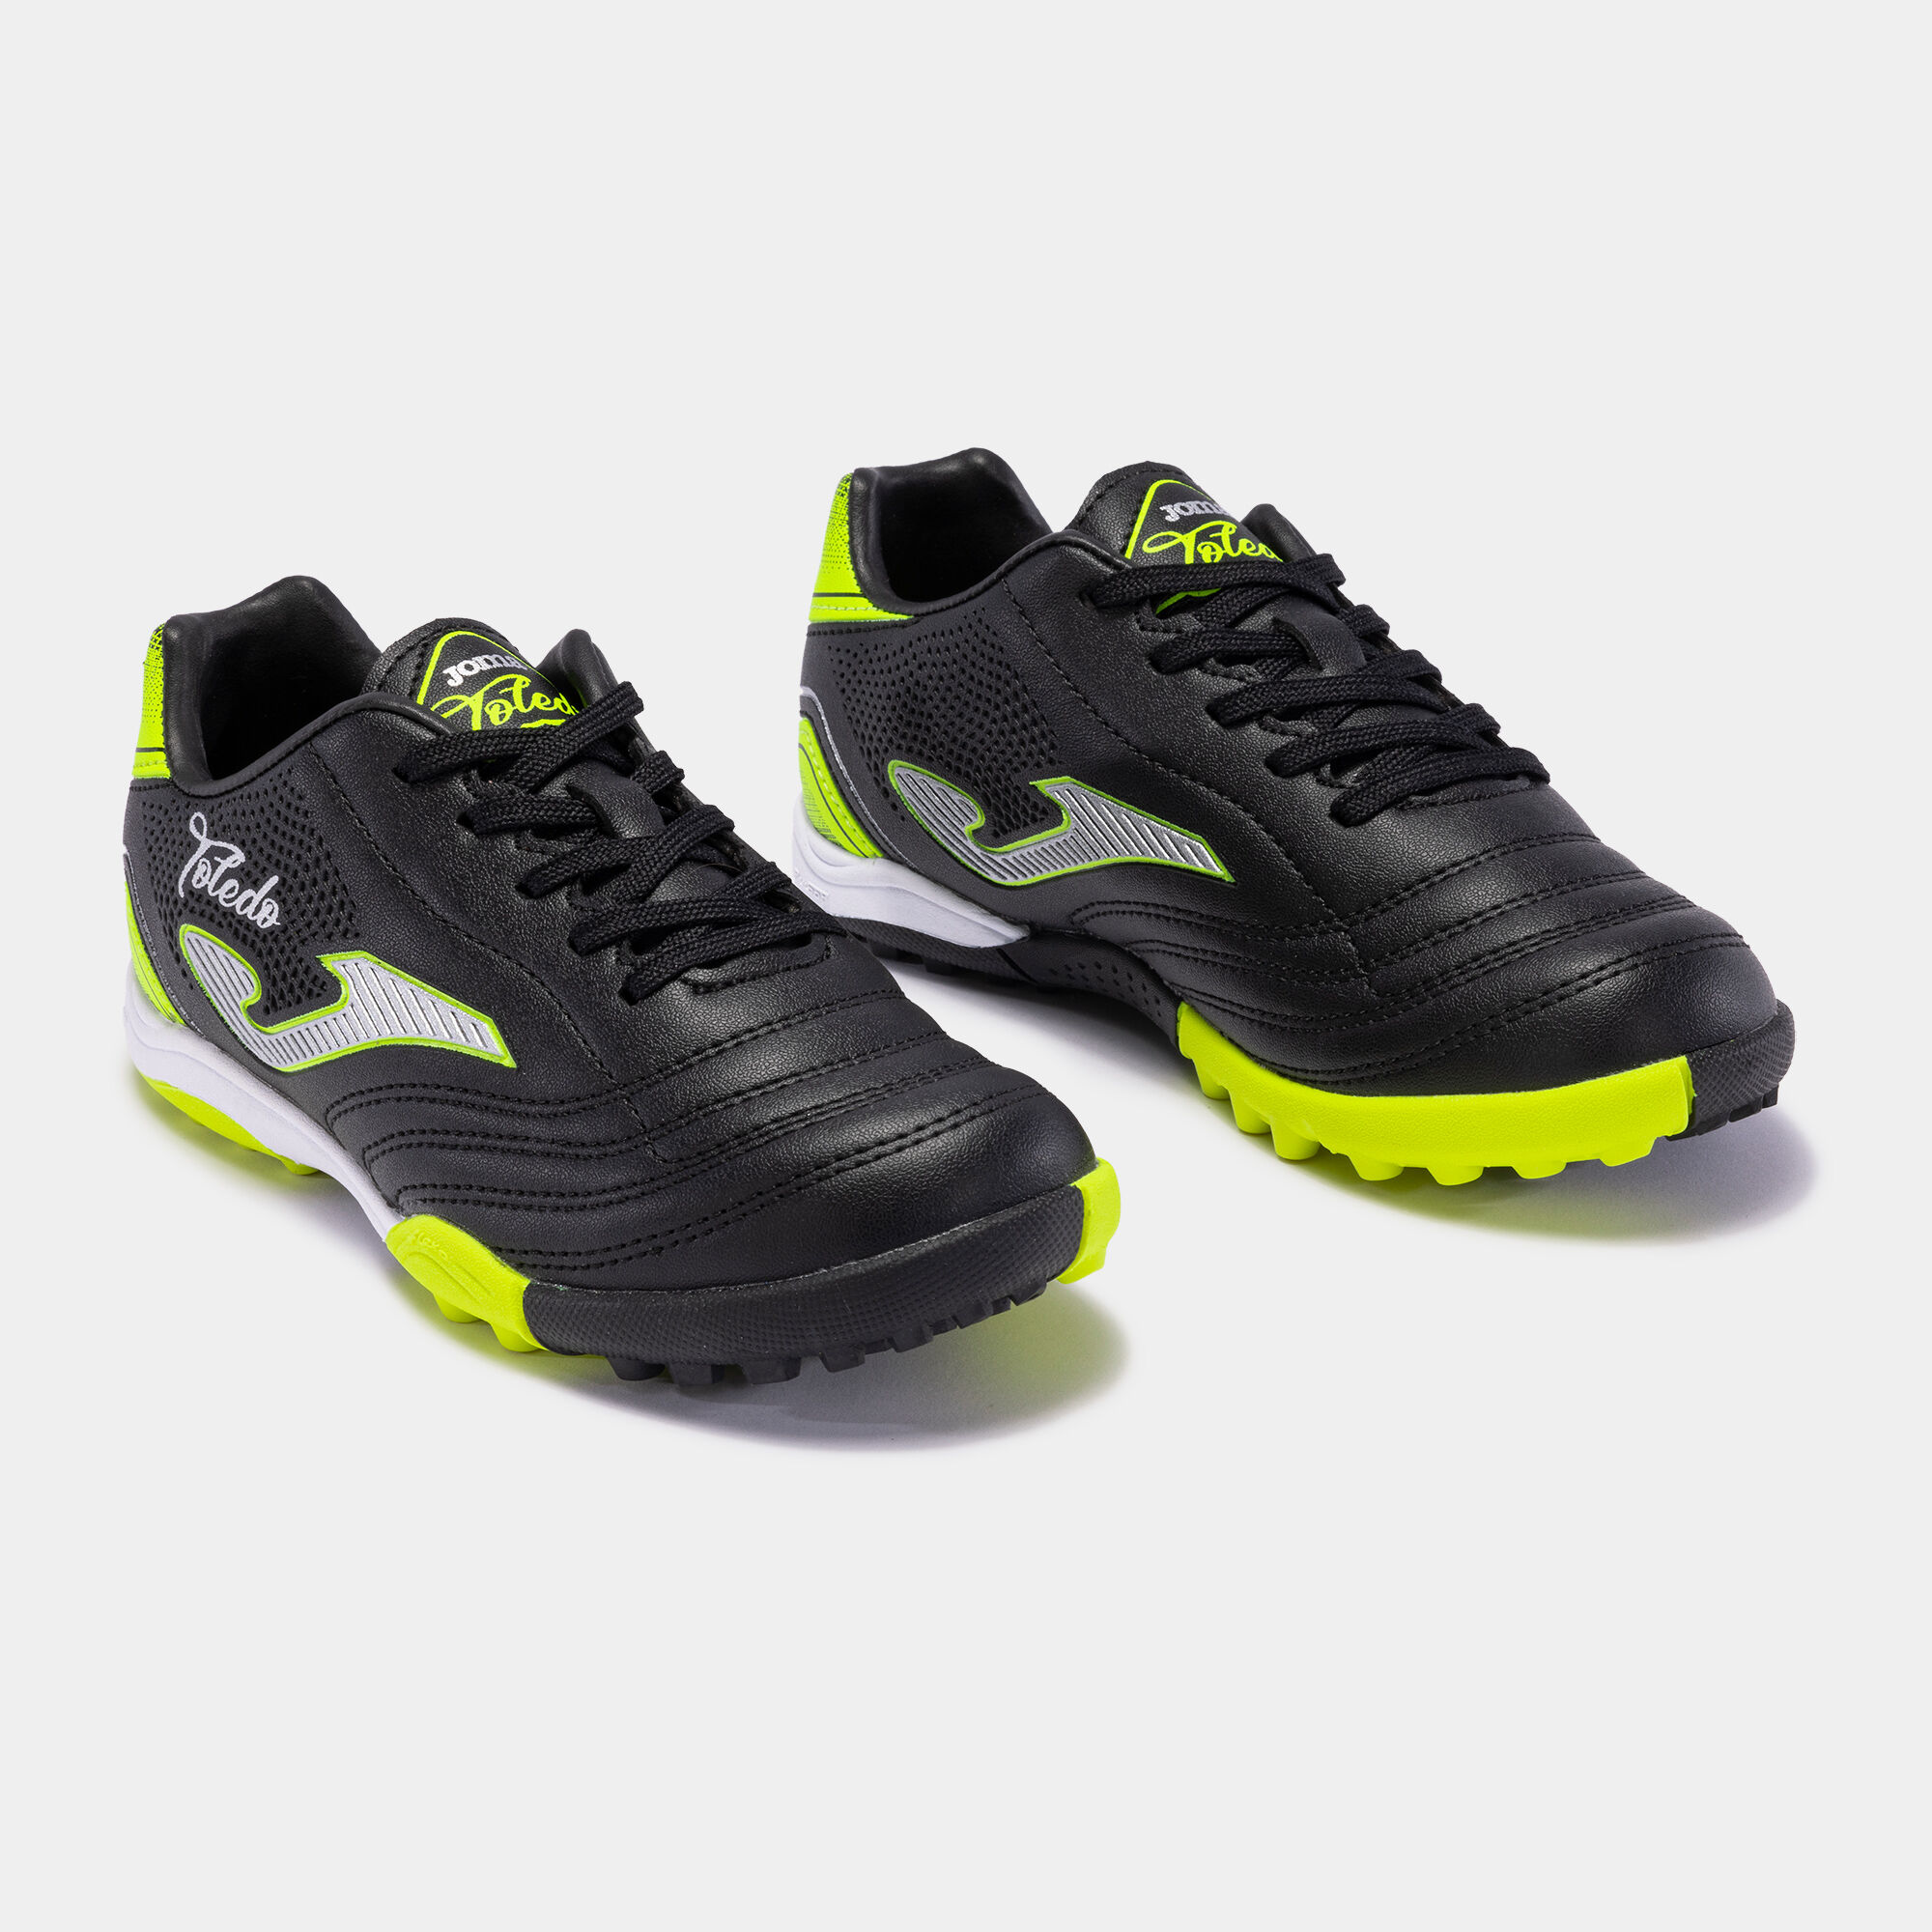 Buty piłkarskie Toledo 22 syntetyczna nawierzchnia turf junior czarny